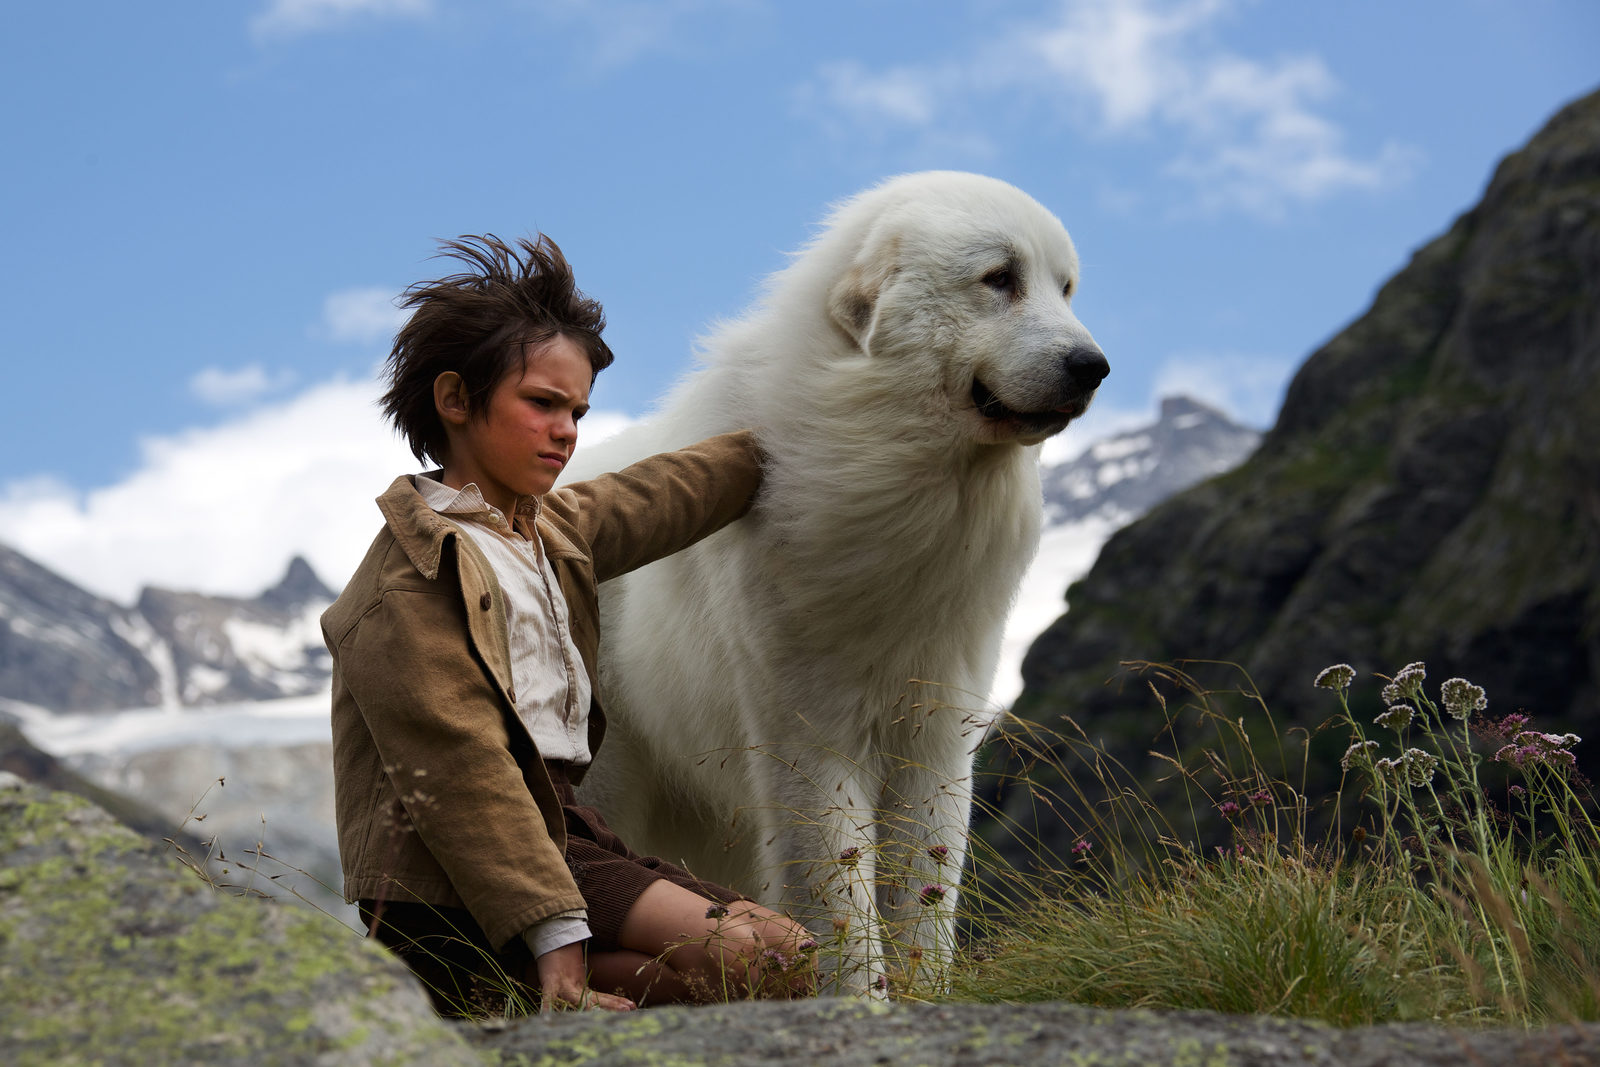 Легендарный французский фильм "белль и себастьян" - с 5 апреля во всех кинотеатрах россии! — обсуждение в группе "пиренейские горные собаки" | птичка.ру